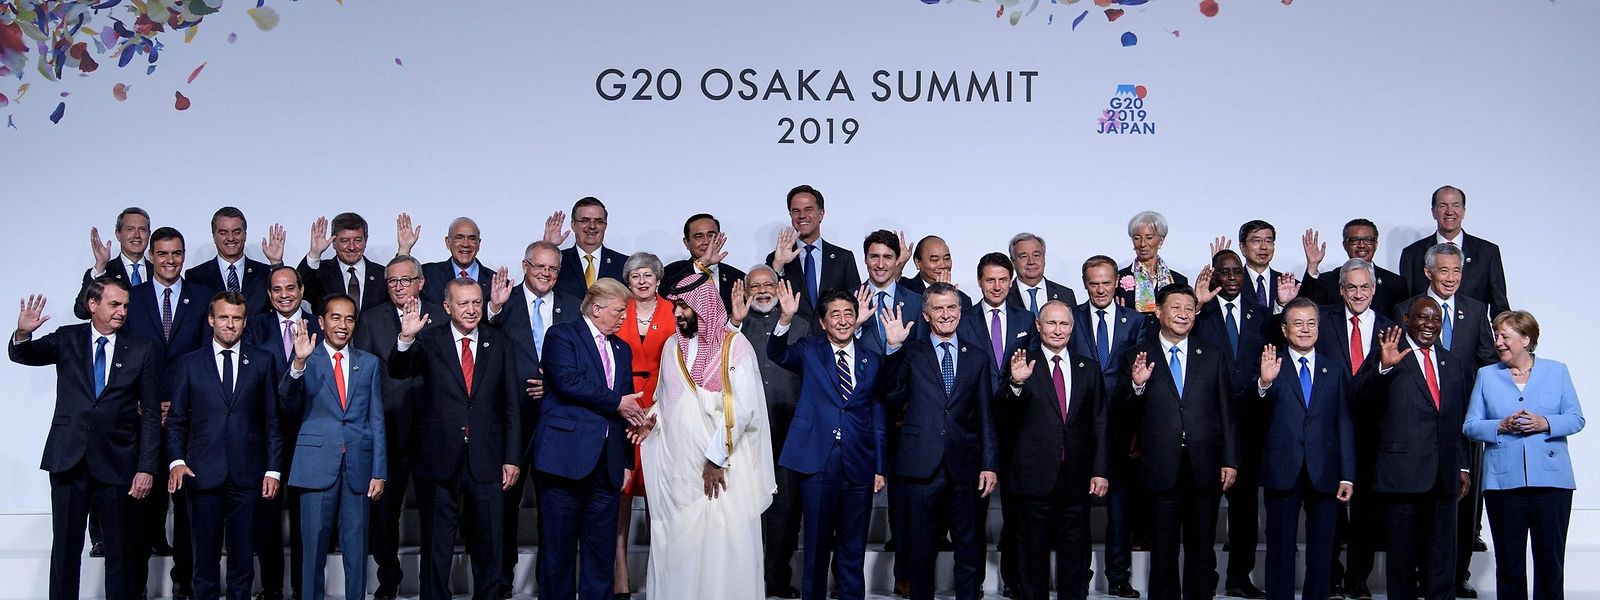 US-Präsident Donald Trump und Saudi Arabiens Kronprinz Mohammed bin Salman geben sich die Hand während der Aufnahme eines Gruppenfotos vom G20 Gipfel in Osaka.